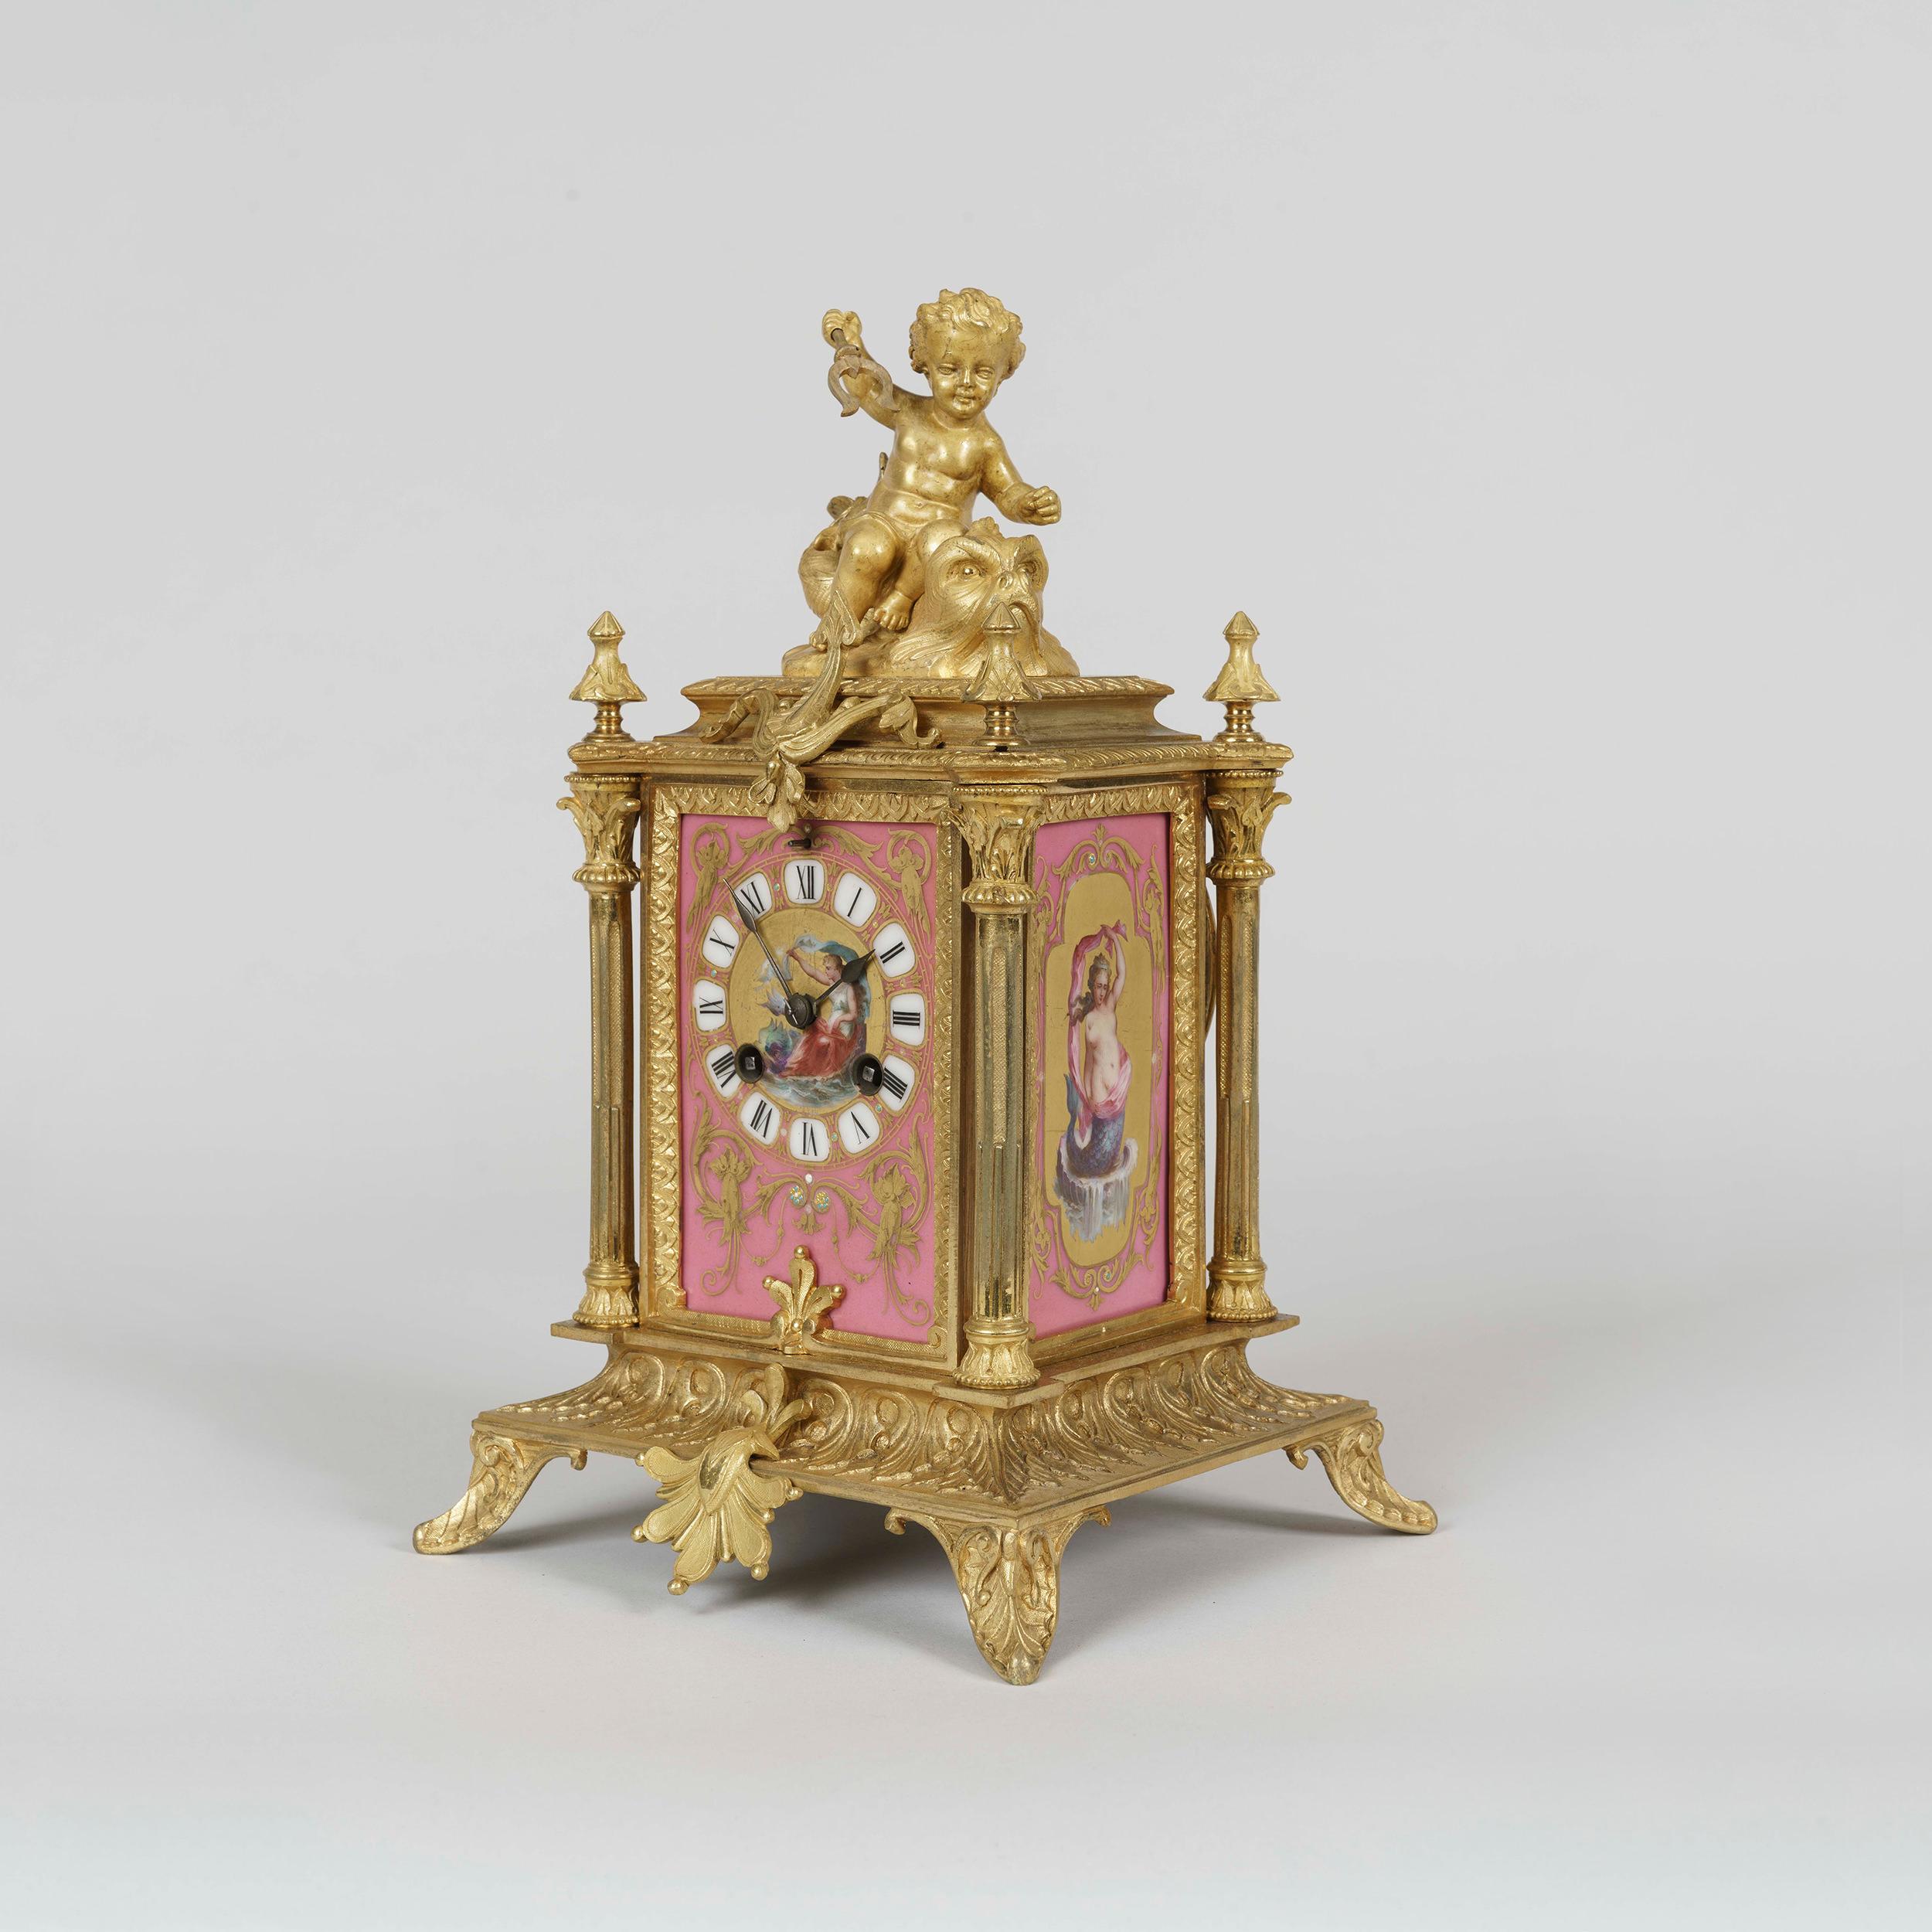 Pendule de table de style Louis XVI
Par Japy Frères

Le boîtier en bronze doré, finement ciselé, est orné de panneaux polychromes roses de style 